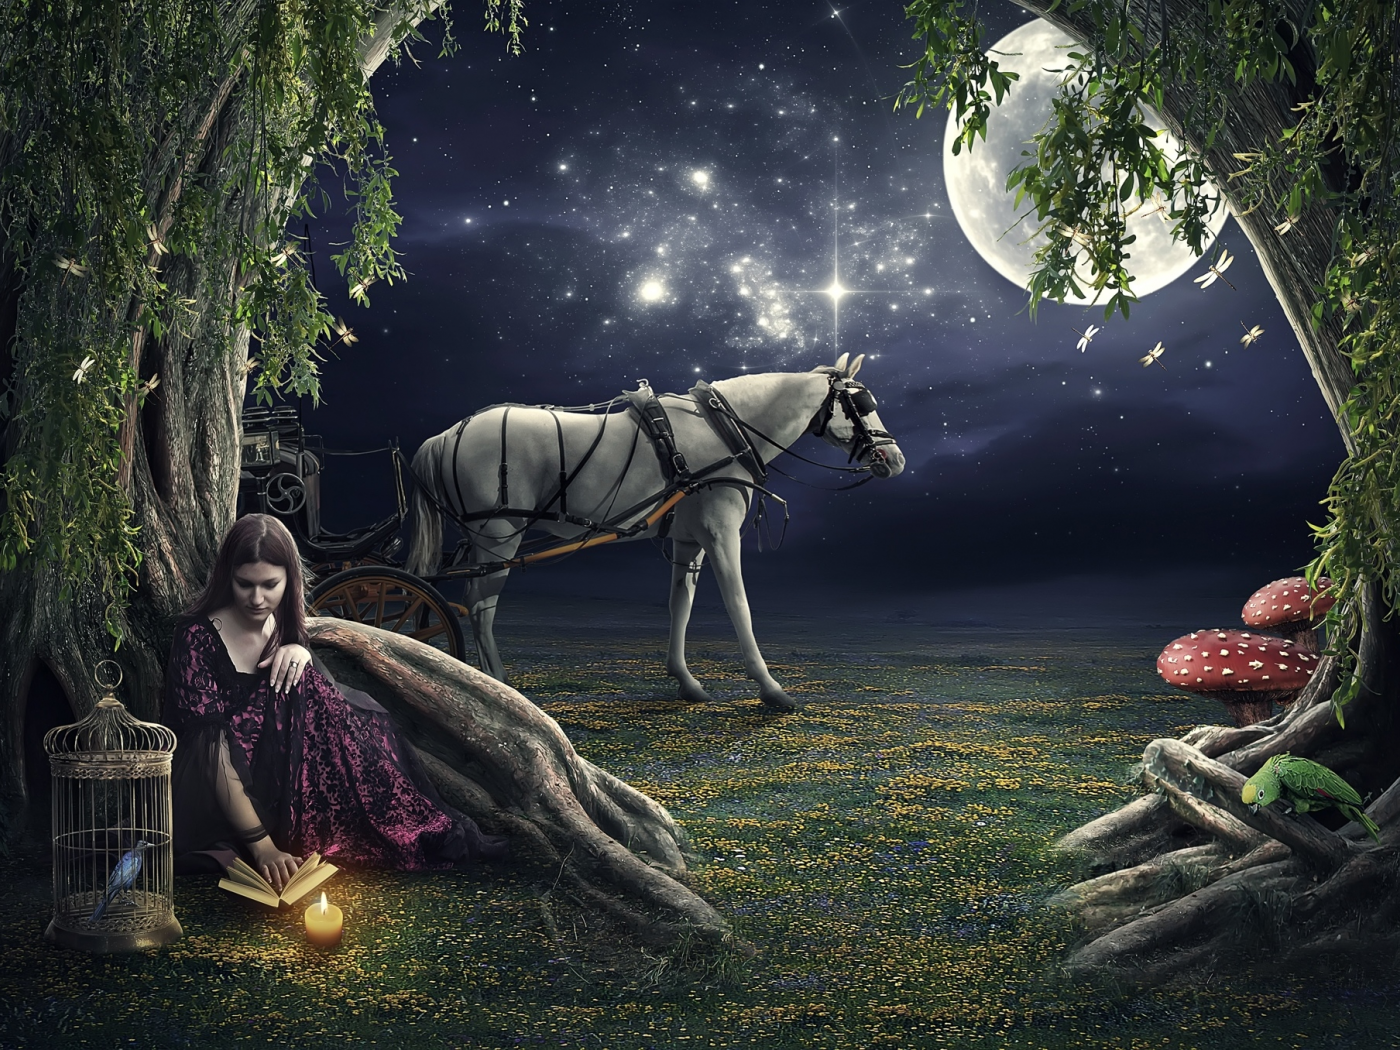 очь, девушка, свеча, клетка, лошадь, луна, звёзды, попугай, птица, дерево, книга, грибы, стрекоза